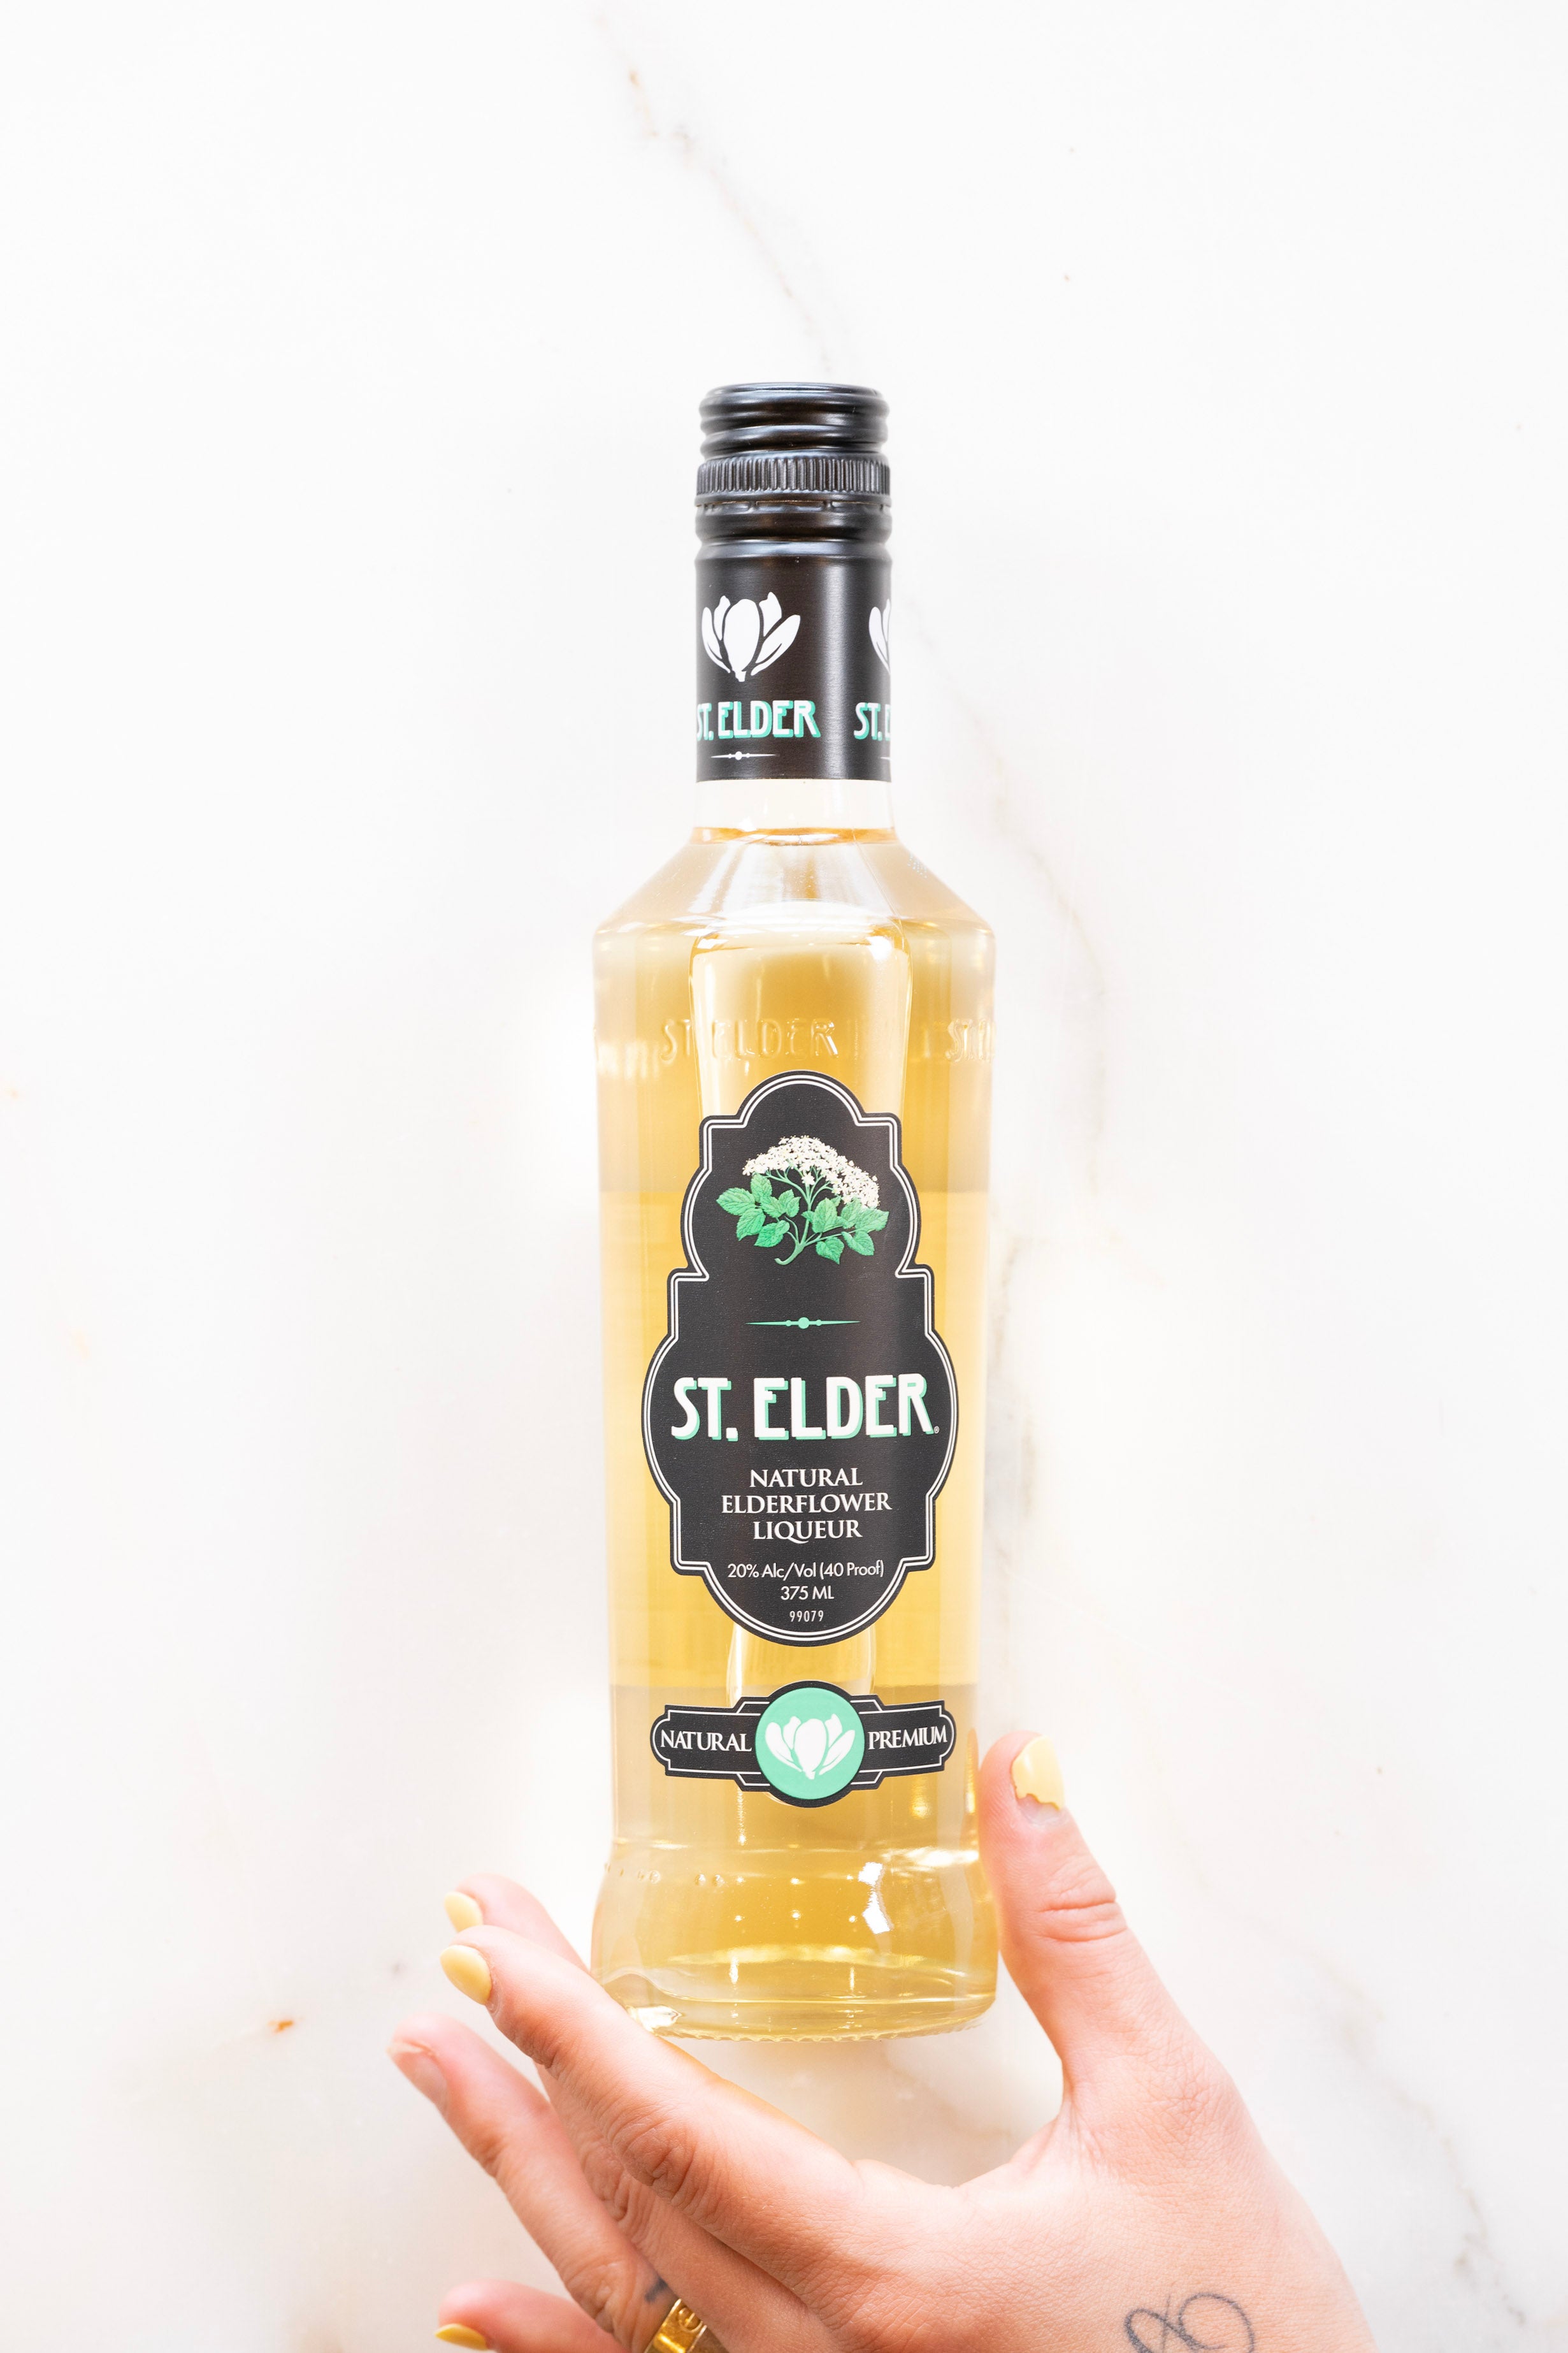 St Elder Elderflower Liquor (375ml) NV